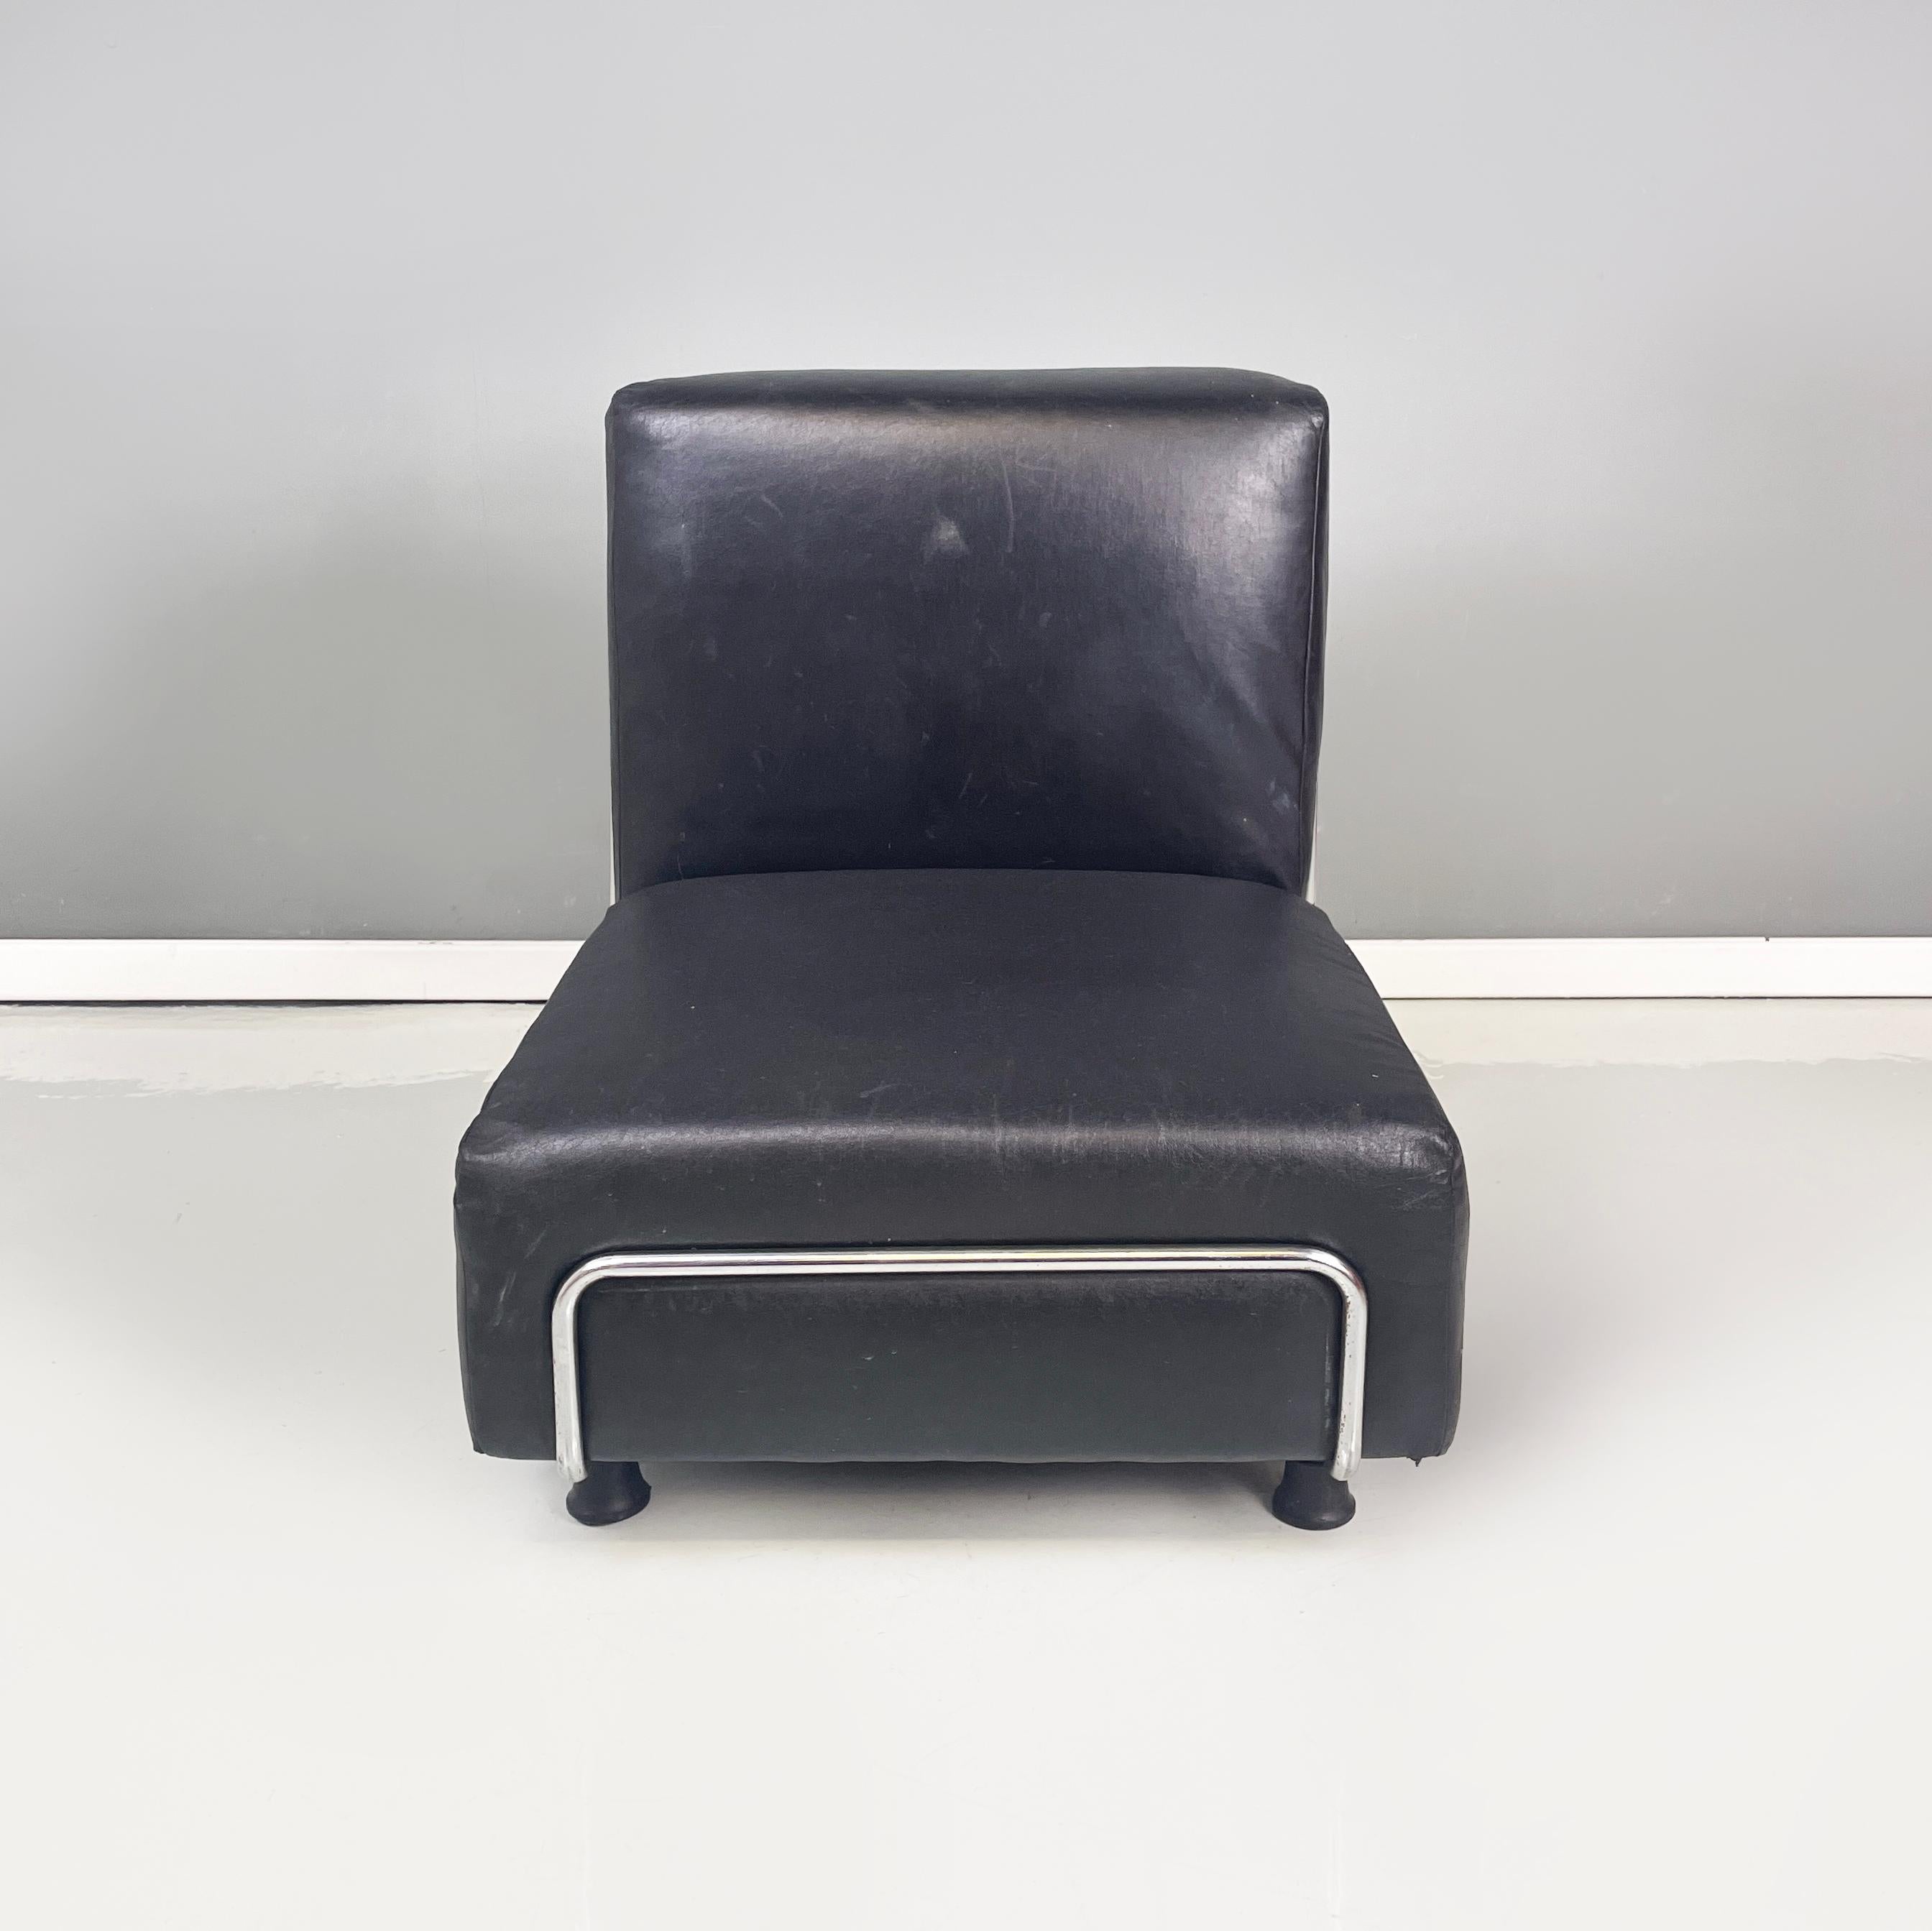 Italienischer moderner Squared Sessel aus schwarzem Leder und Metall, 1980er Jahre
Sessel mit quadratischem Sitz und Rückenlehne, gepolstert und mit schwarzem Leder bezogen. Die Struktur des Sessels ist vollständig aus Metallstäben gefertigt.
1980